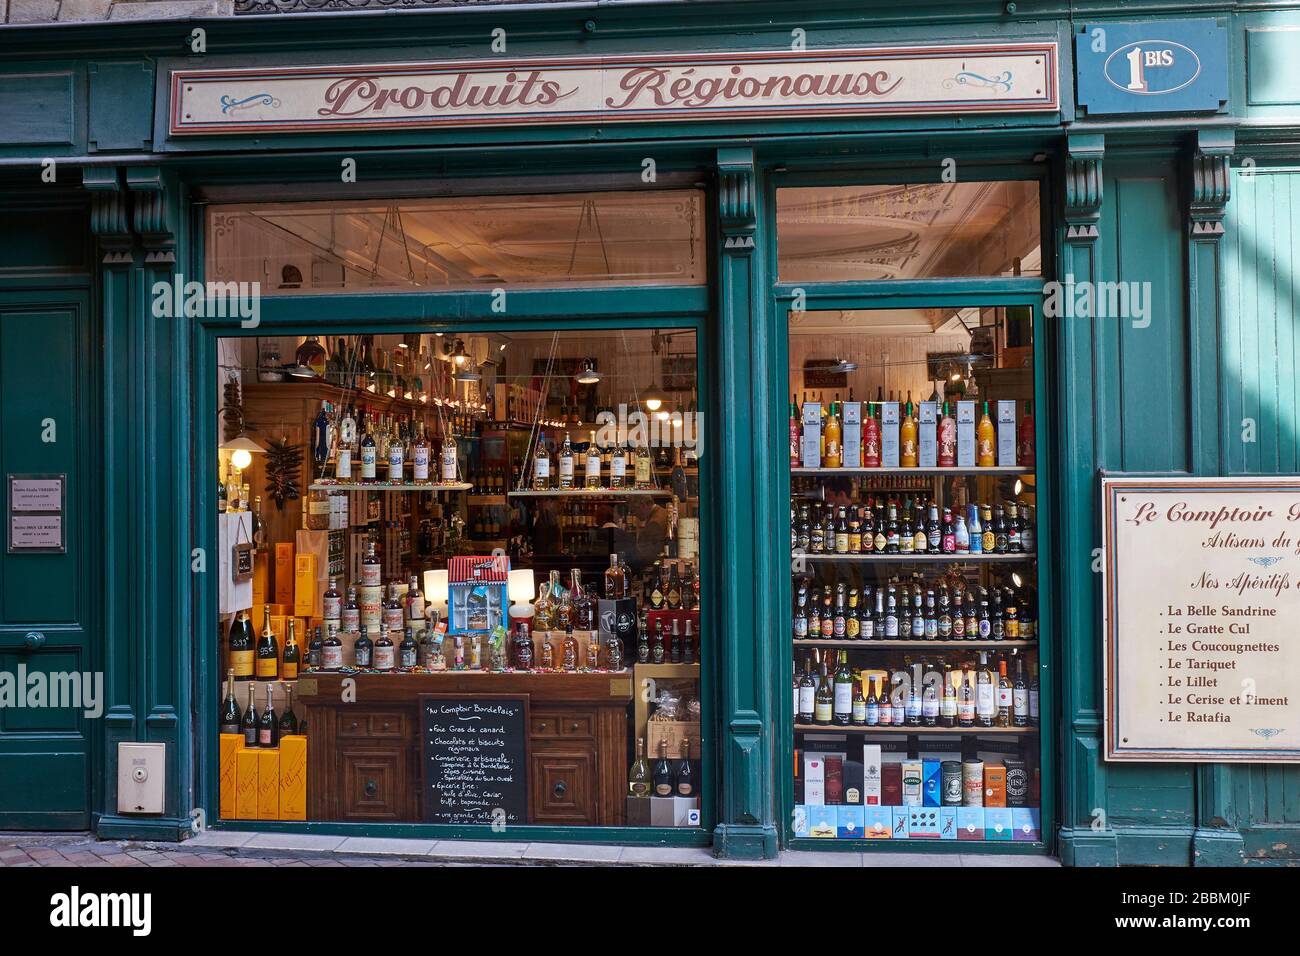 Vista esterna del negozio di vini e liquori francesi chiamato Produits Régionaux Foto Stock